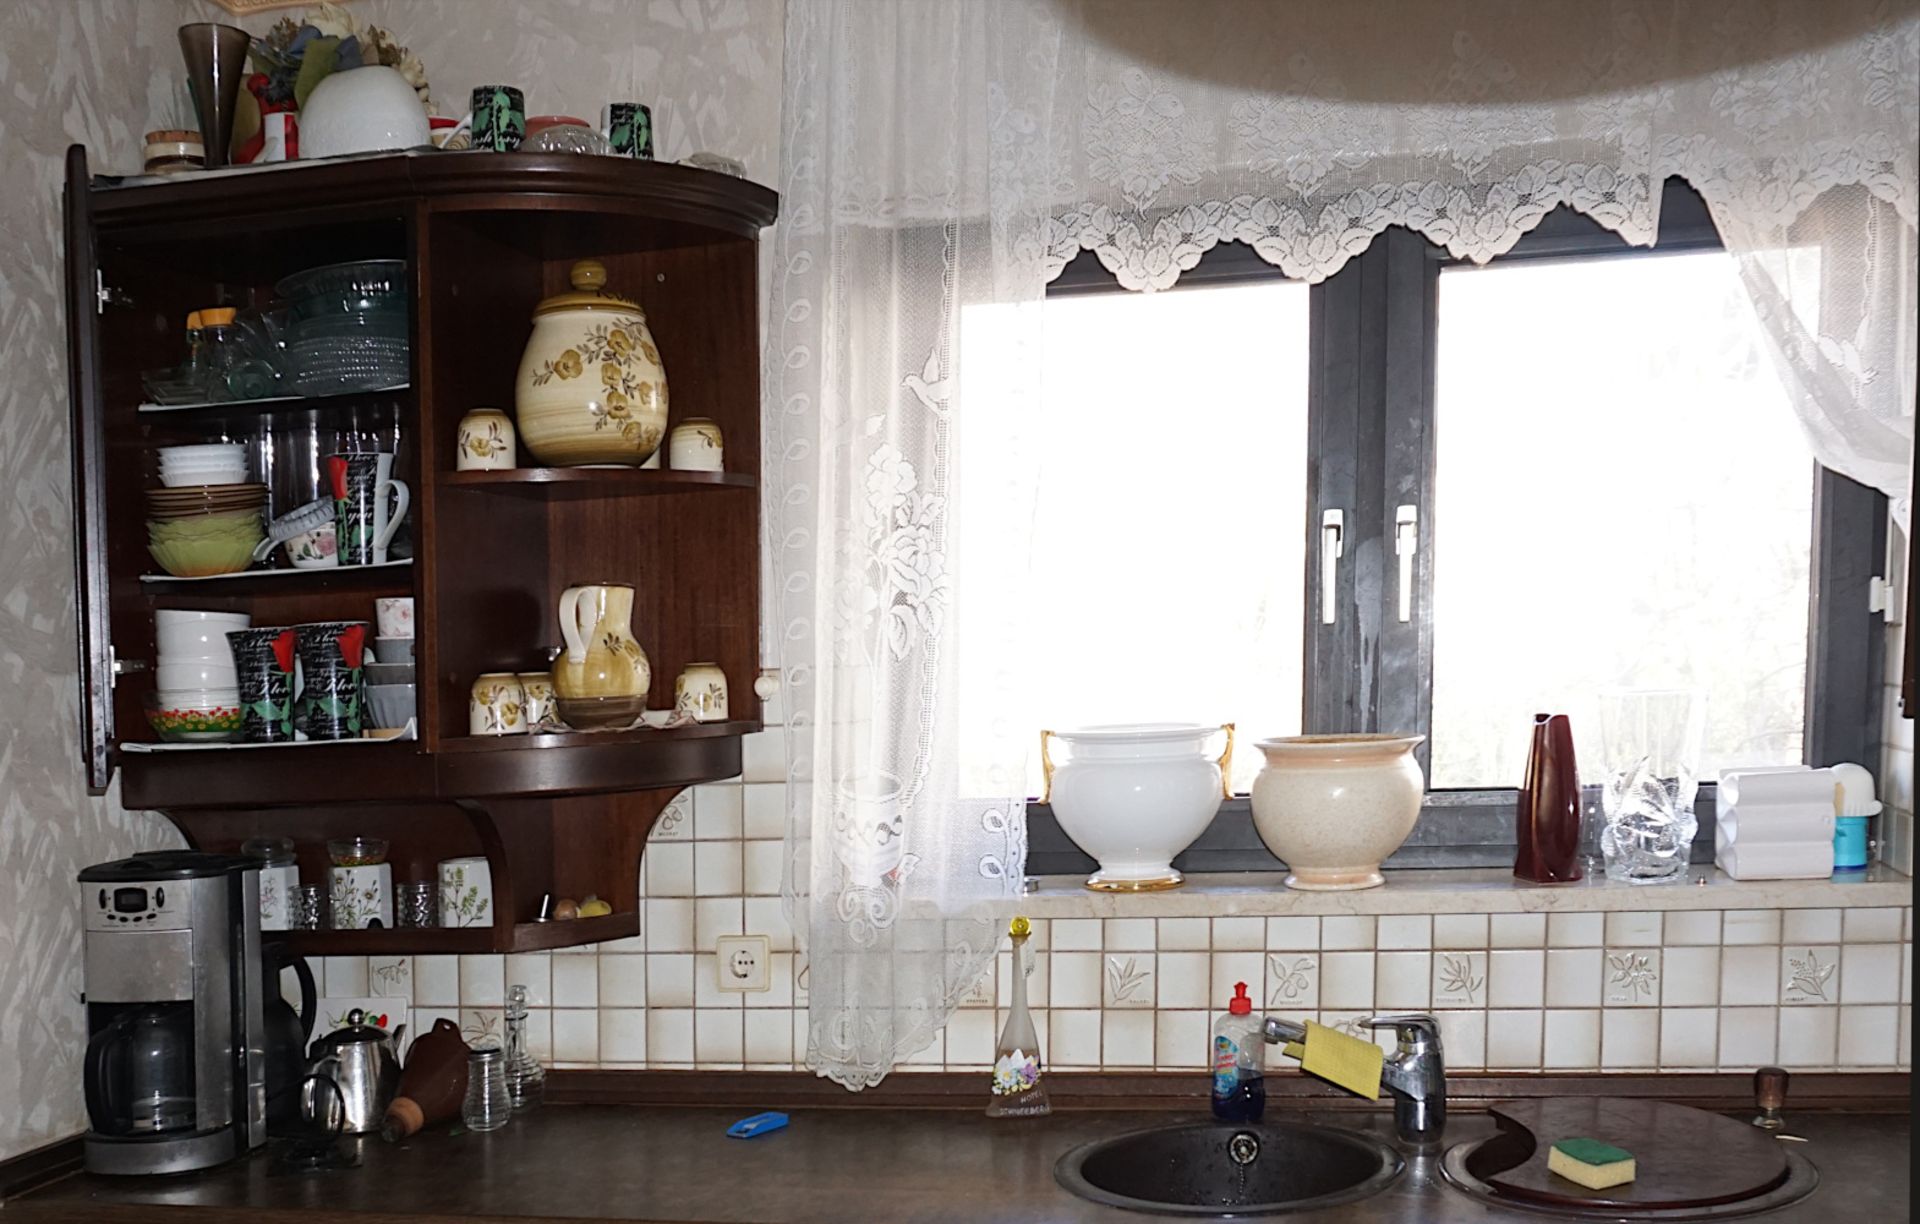 Kücheninhalt (ohne Küche): Hausrat, Elektrogeräte, Gläser, Holz- und Metallwaren, weißes Kleinmöbel,